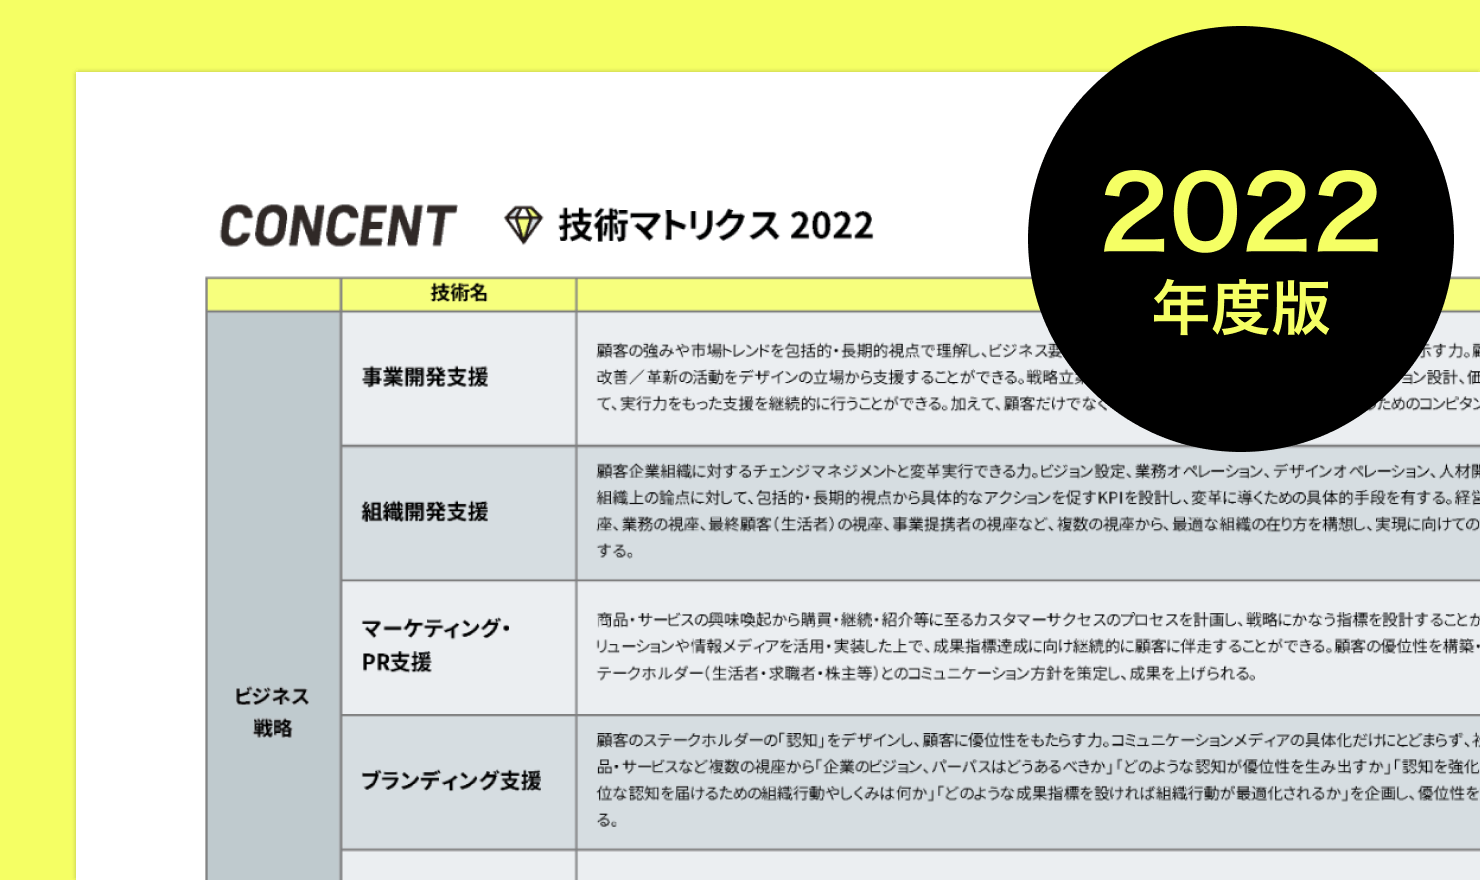 図5 技術マトリクスの記事のカバーイメージ。「CONCENT 技術マトリクス 2022」のタイトル、表の一部のスクリーンショット、2022年度版という囲み文字。